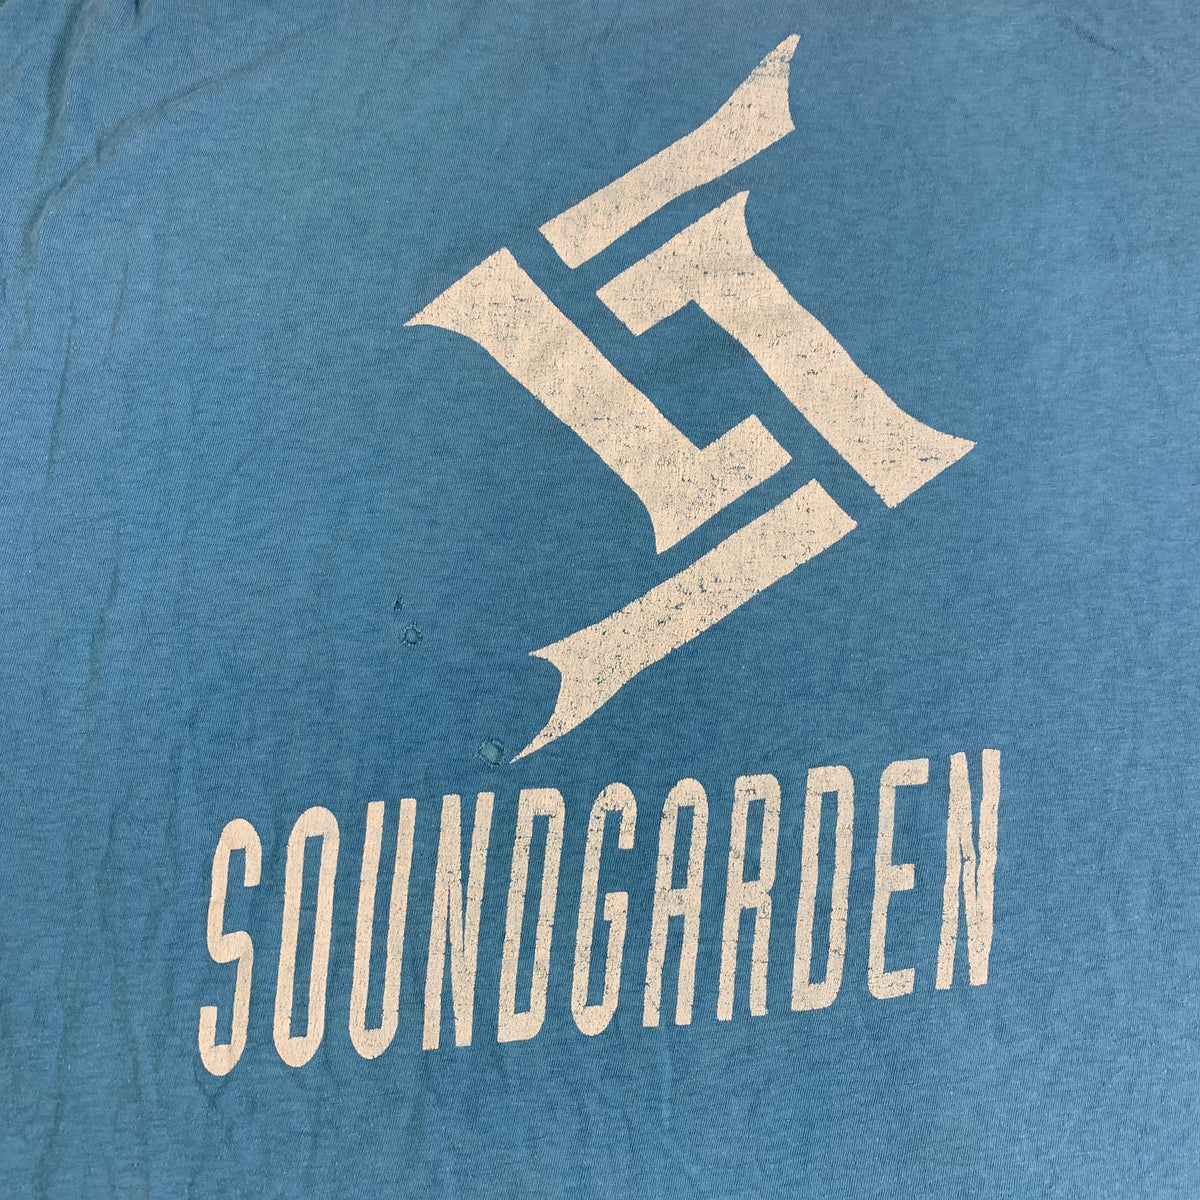 Vintage Soundgarden &quot;Badmotorfinger&quot; T-Shirt - jointcustodydc